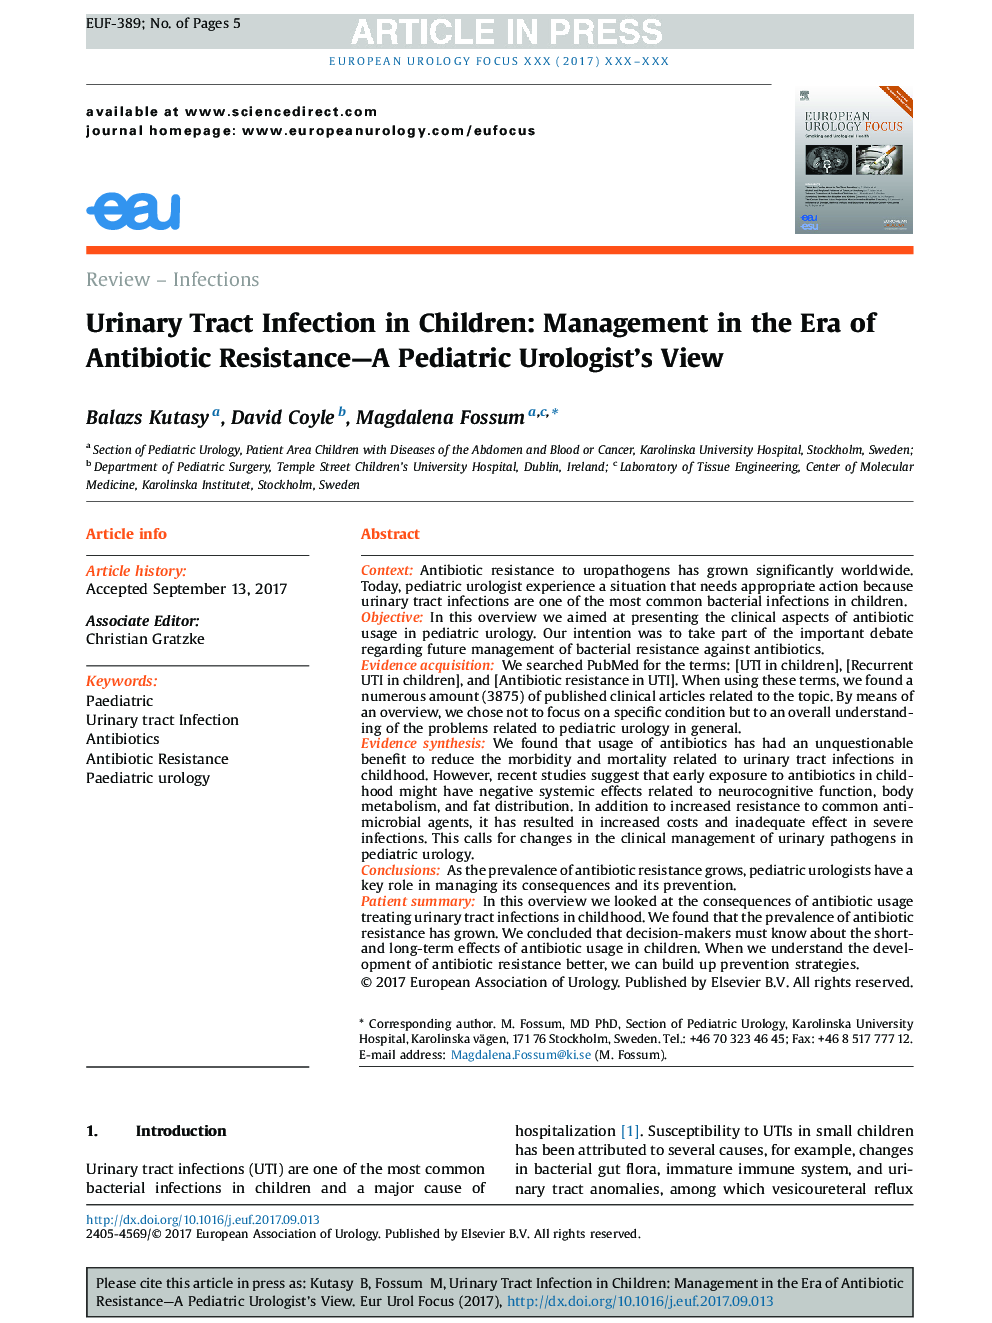 عفونت ادراری در کودکان: مدیریت در دوران مقاومت آنتی بیوتیکی - مشاهده یولوژیست اطفال 